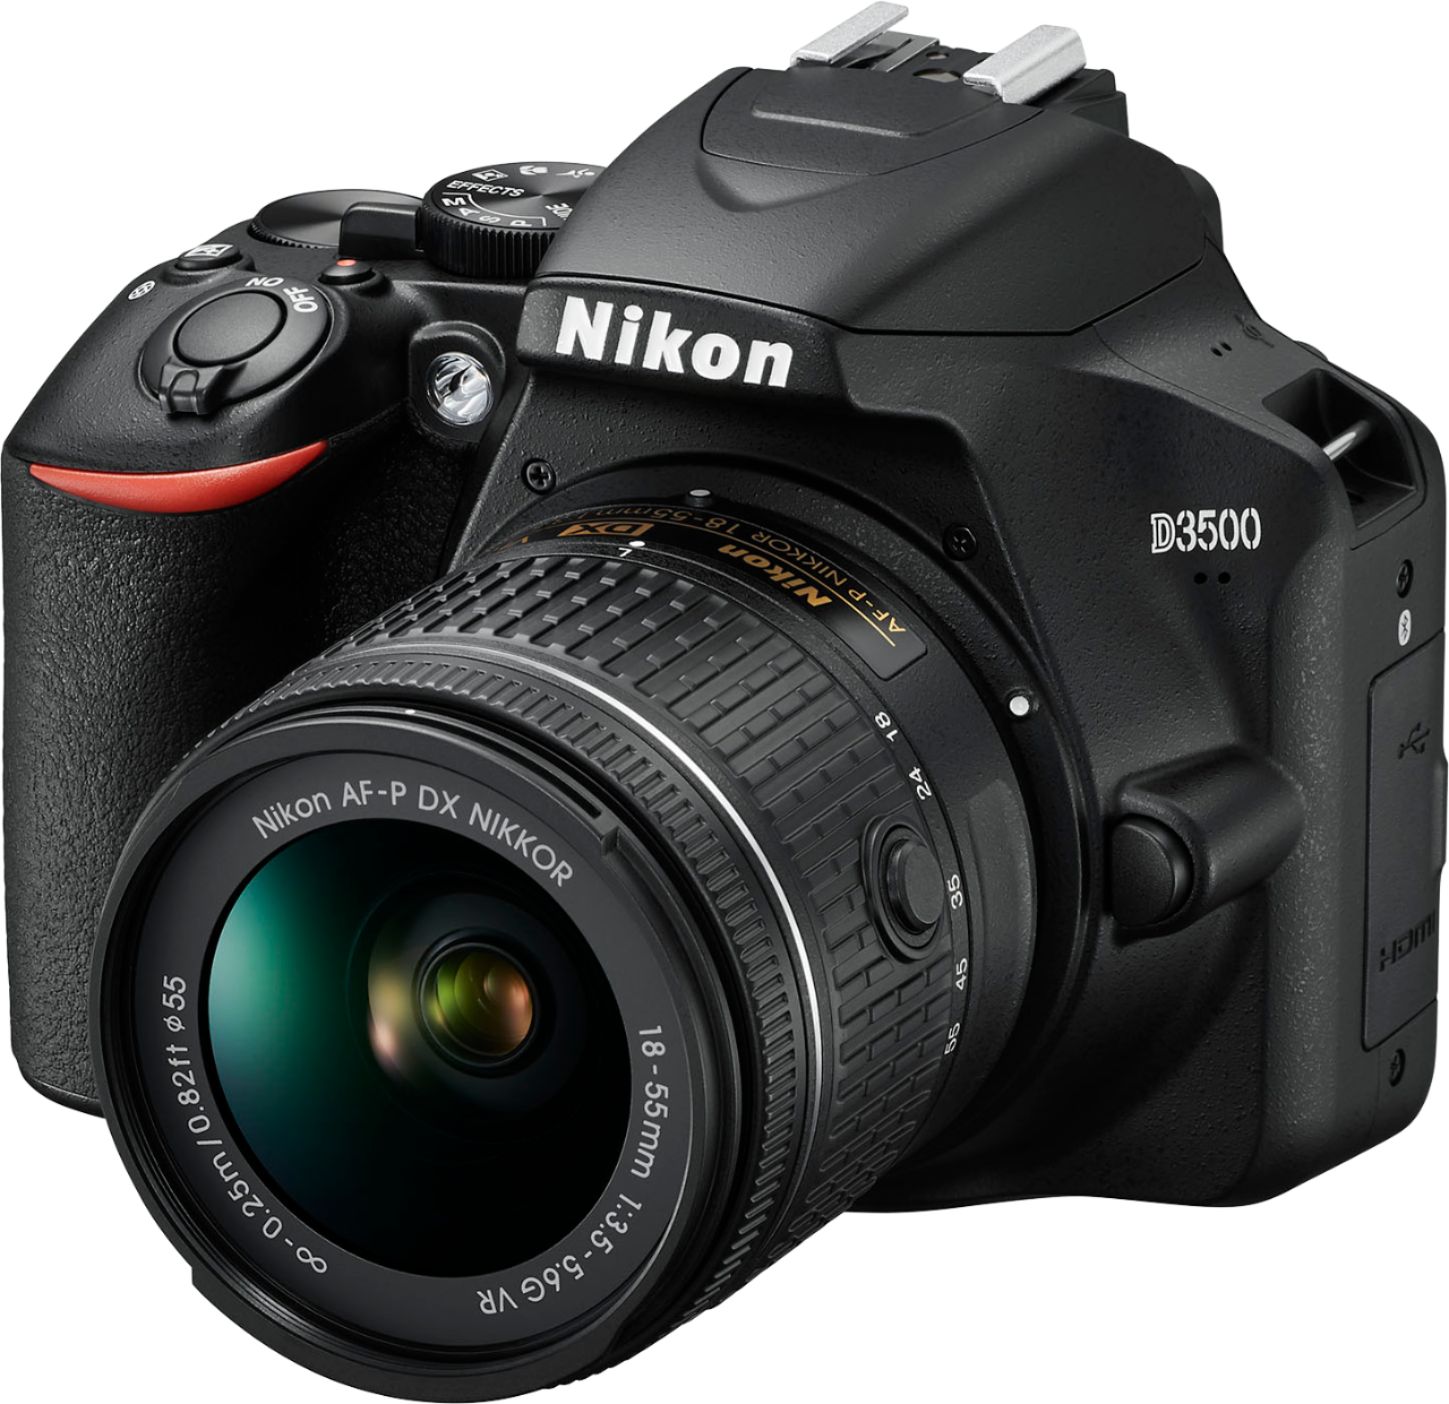 Left View: Nikon - D3500 DSLR Video Camera with AF-P DX NIKKOR 18-55mm f/3.5-5.6G VR Lens - Black